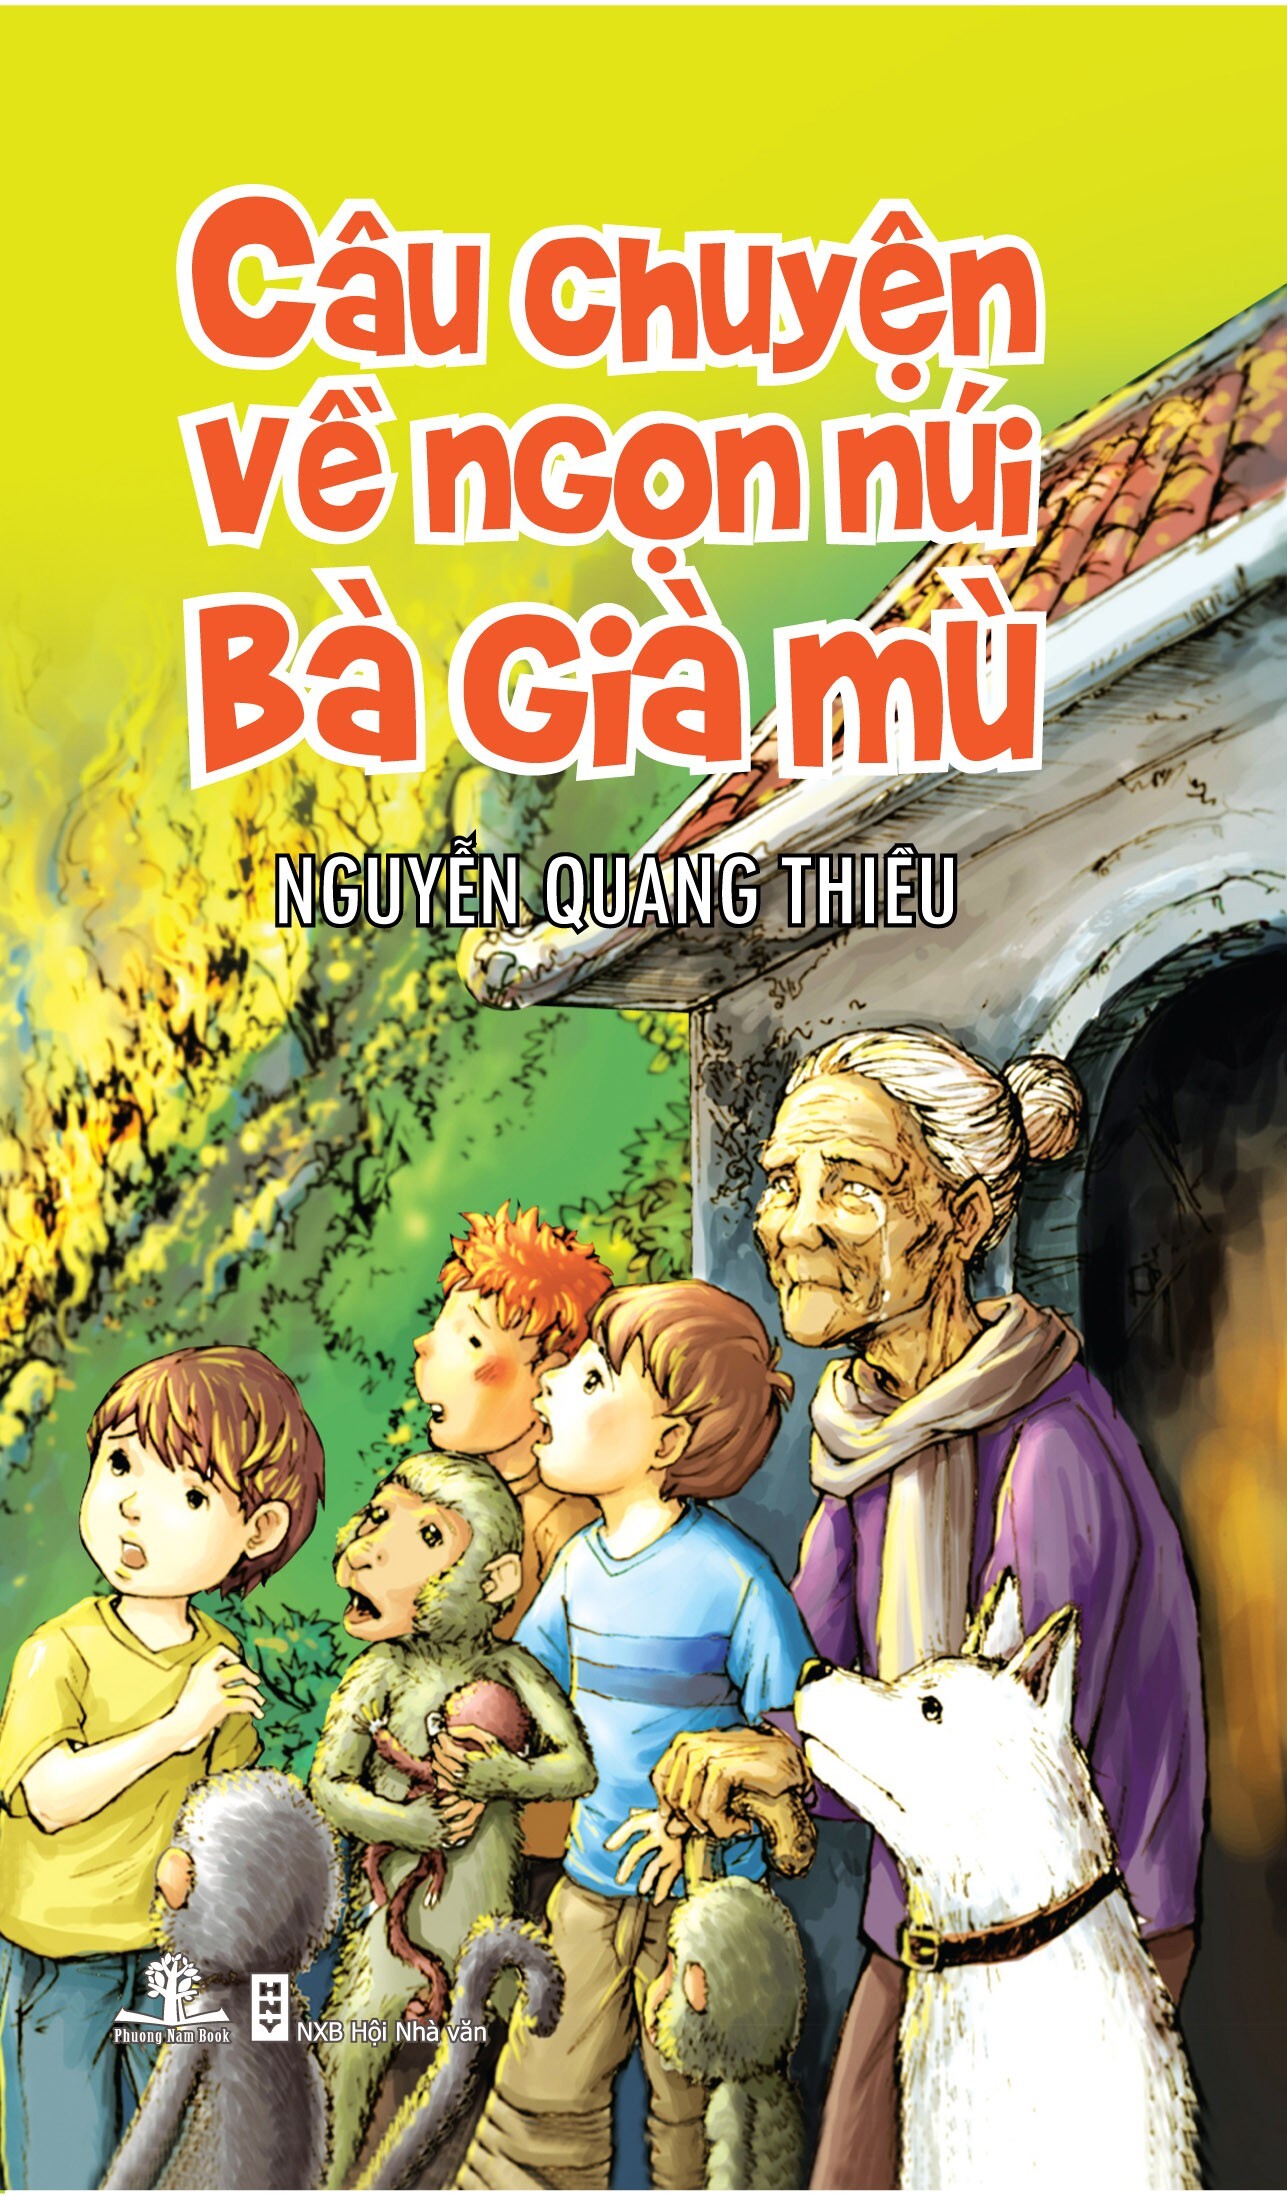 Câu chuyện về ngọn núi bà già mù – Nguyễn Quang Thiều